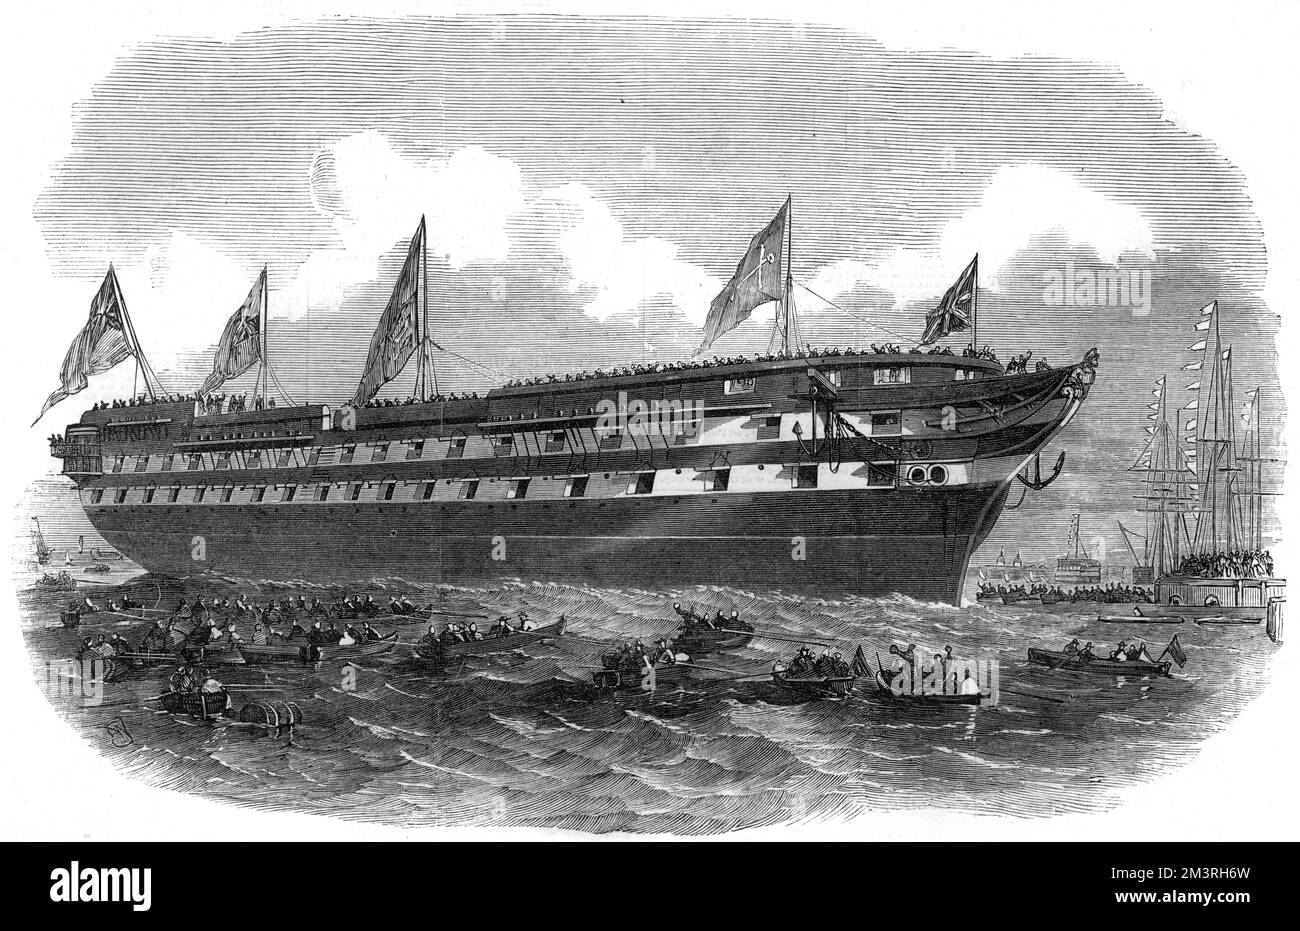 Der Start des HMSS-Hannibal-Schraubendampfschiffs am 31.. Januar 1854 in Deptford Dockyard. Das Schiff diente im Krimkrieg. Datum: 1854 Stockfoto